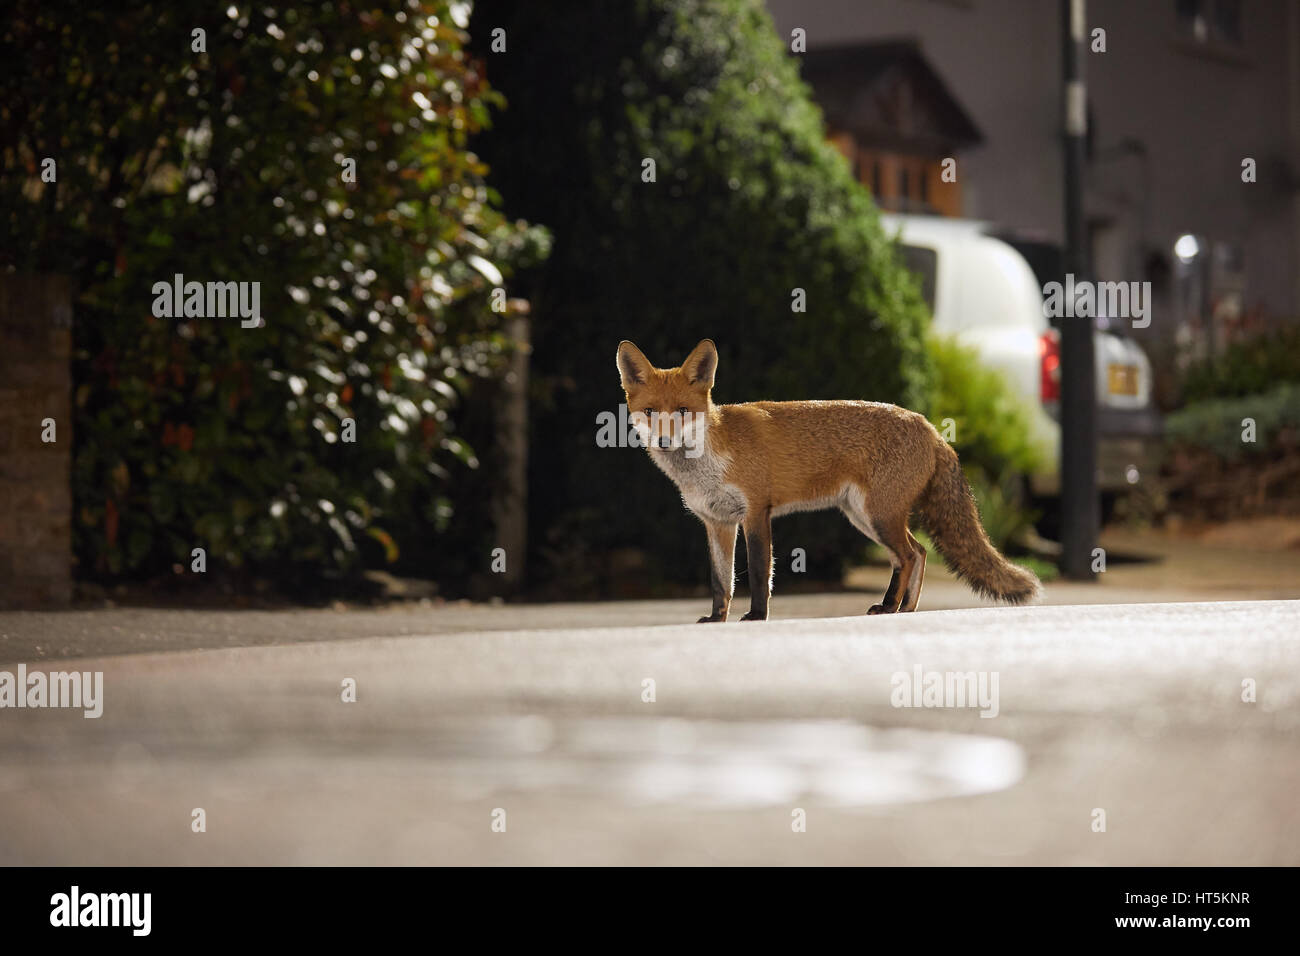 Fox la nuit urbaine Banque D'Images